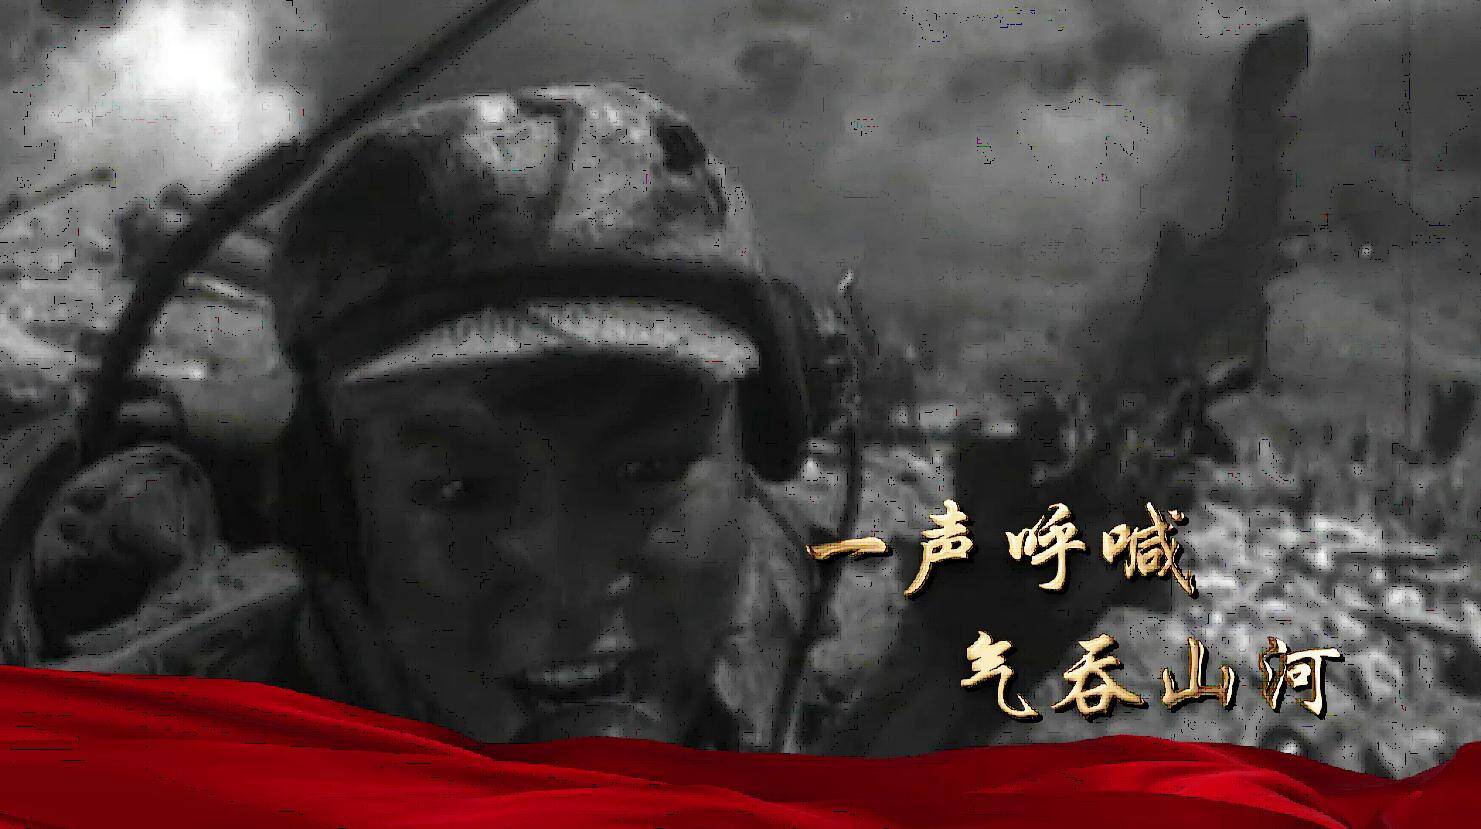 致敬抗美援朝英雄 专题片《重寻英雄“王成”》12月31日晚播出